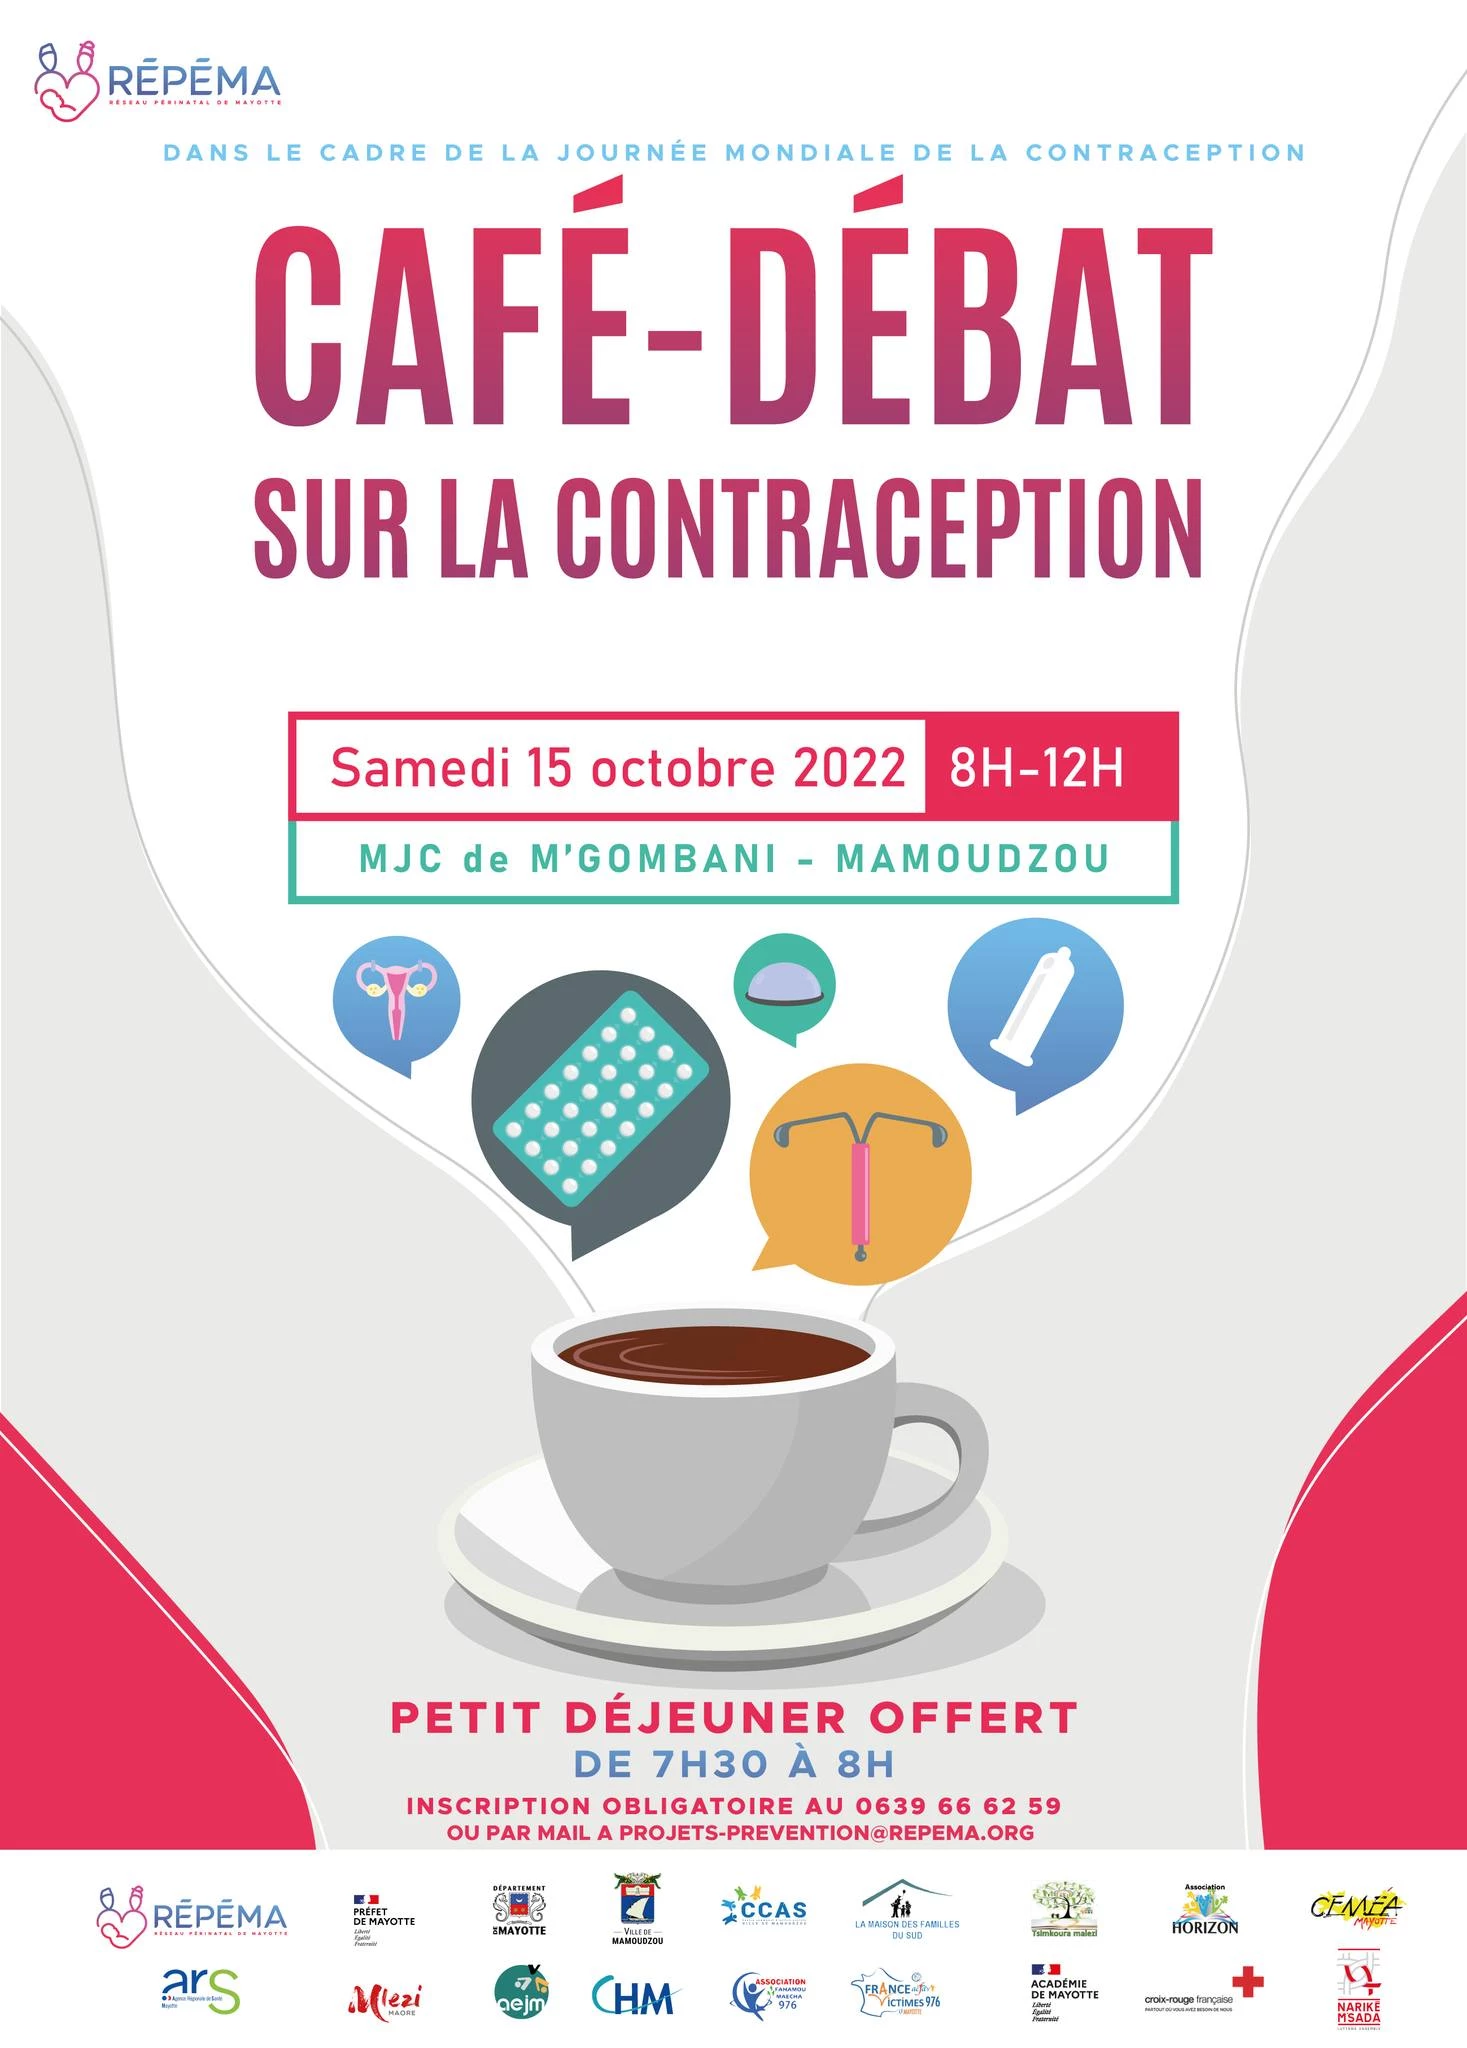 CAFÉ-DÉBAT SUR LA CONTRACEPTION